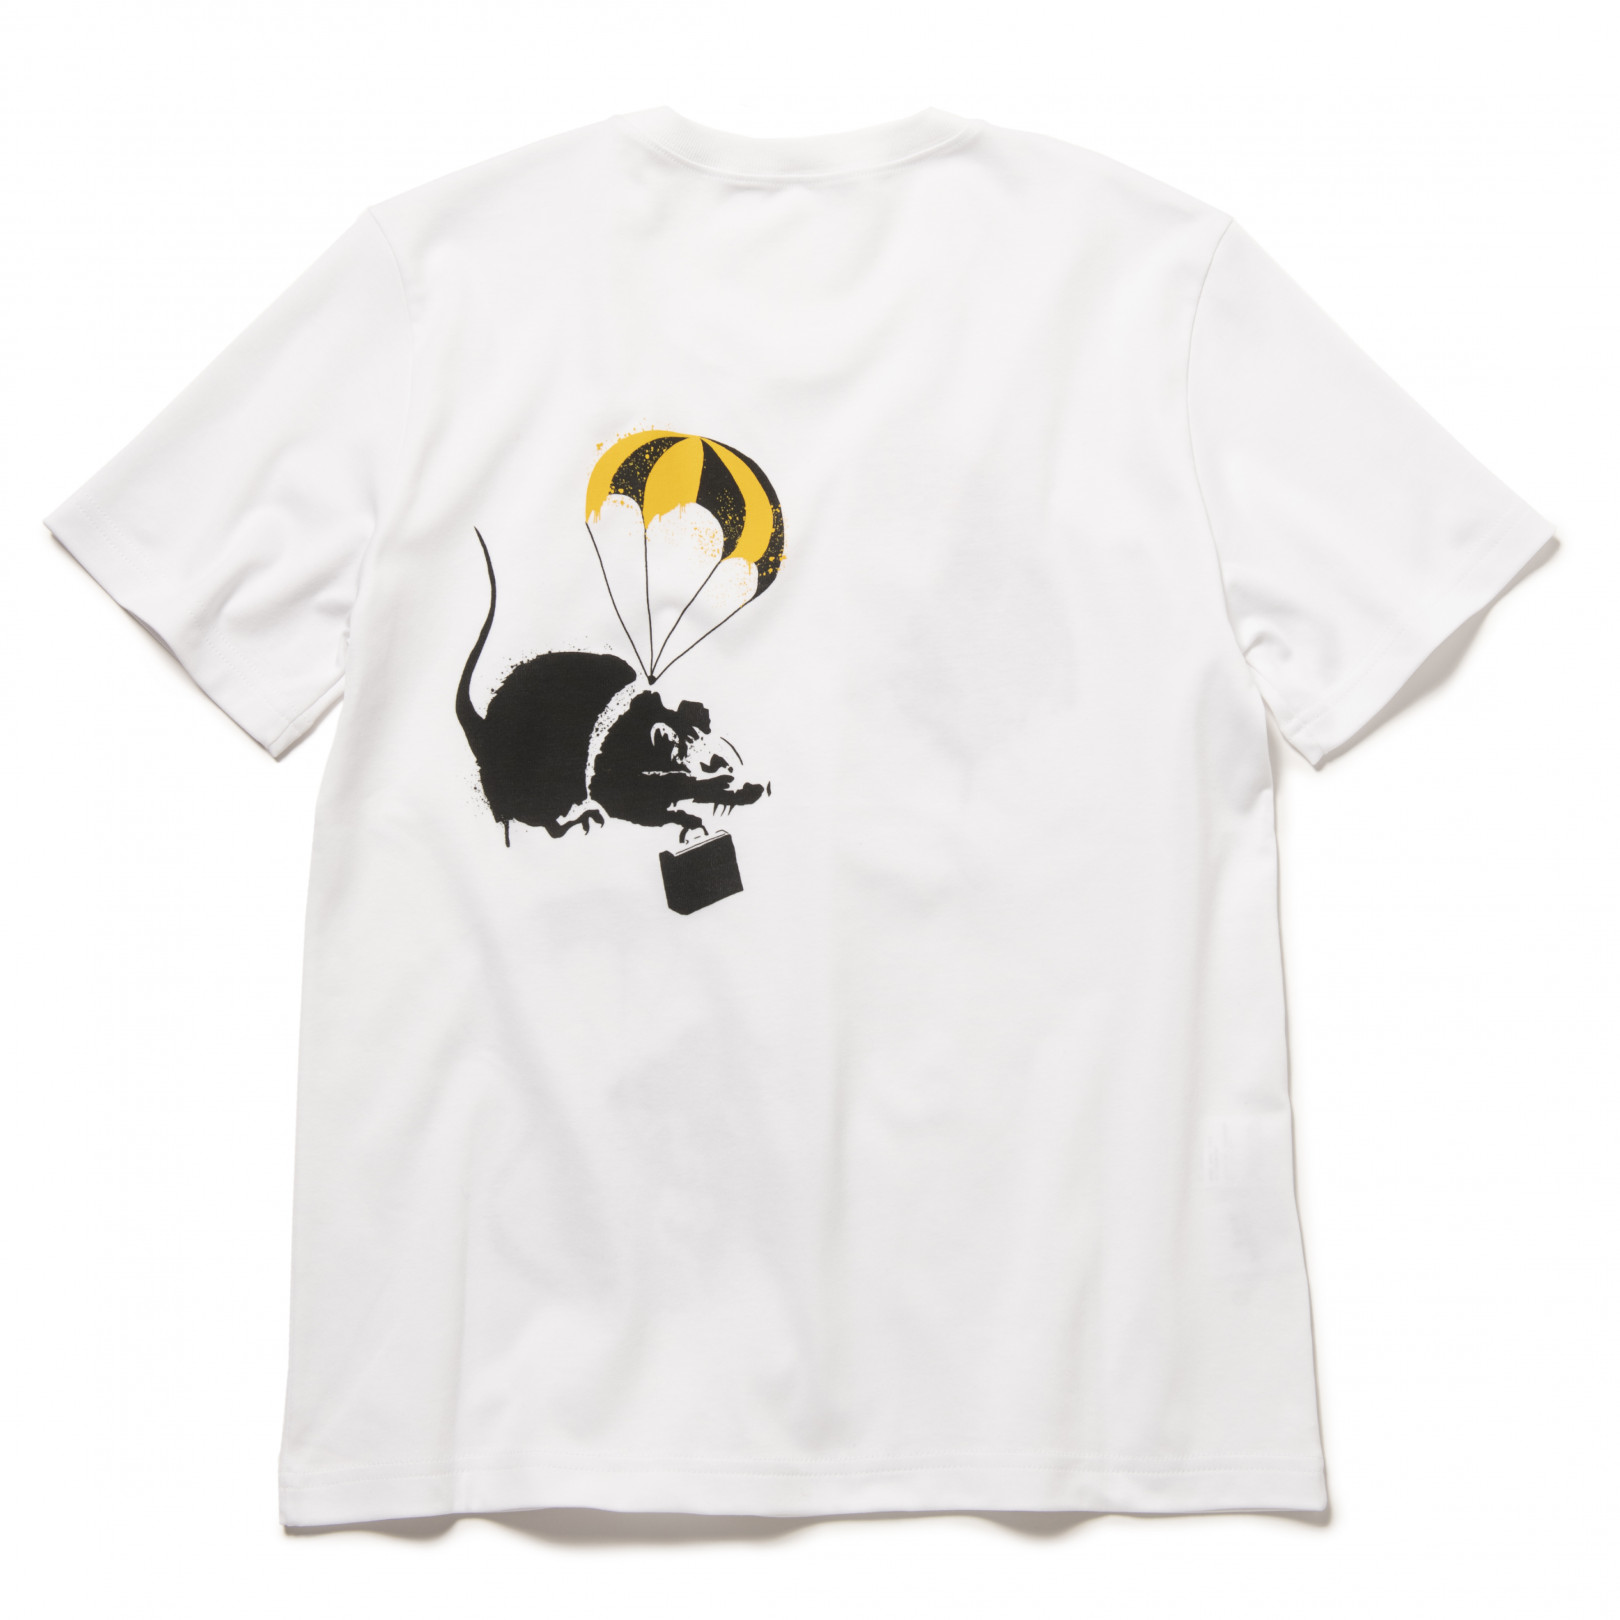 Tシャツ Banksy‘s Graffiti RAT(ラット・バック)メンズS~L、ウィメンズXS~M 共に7万4,800円